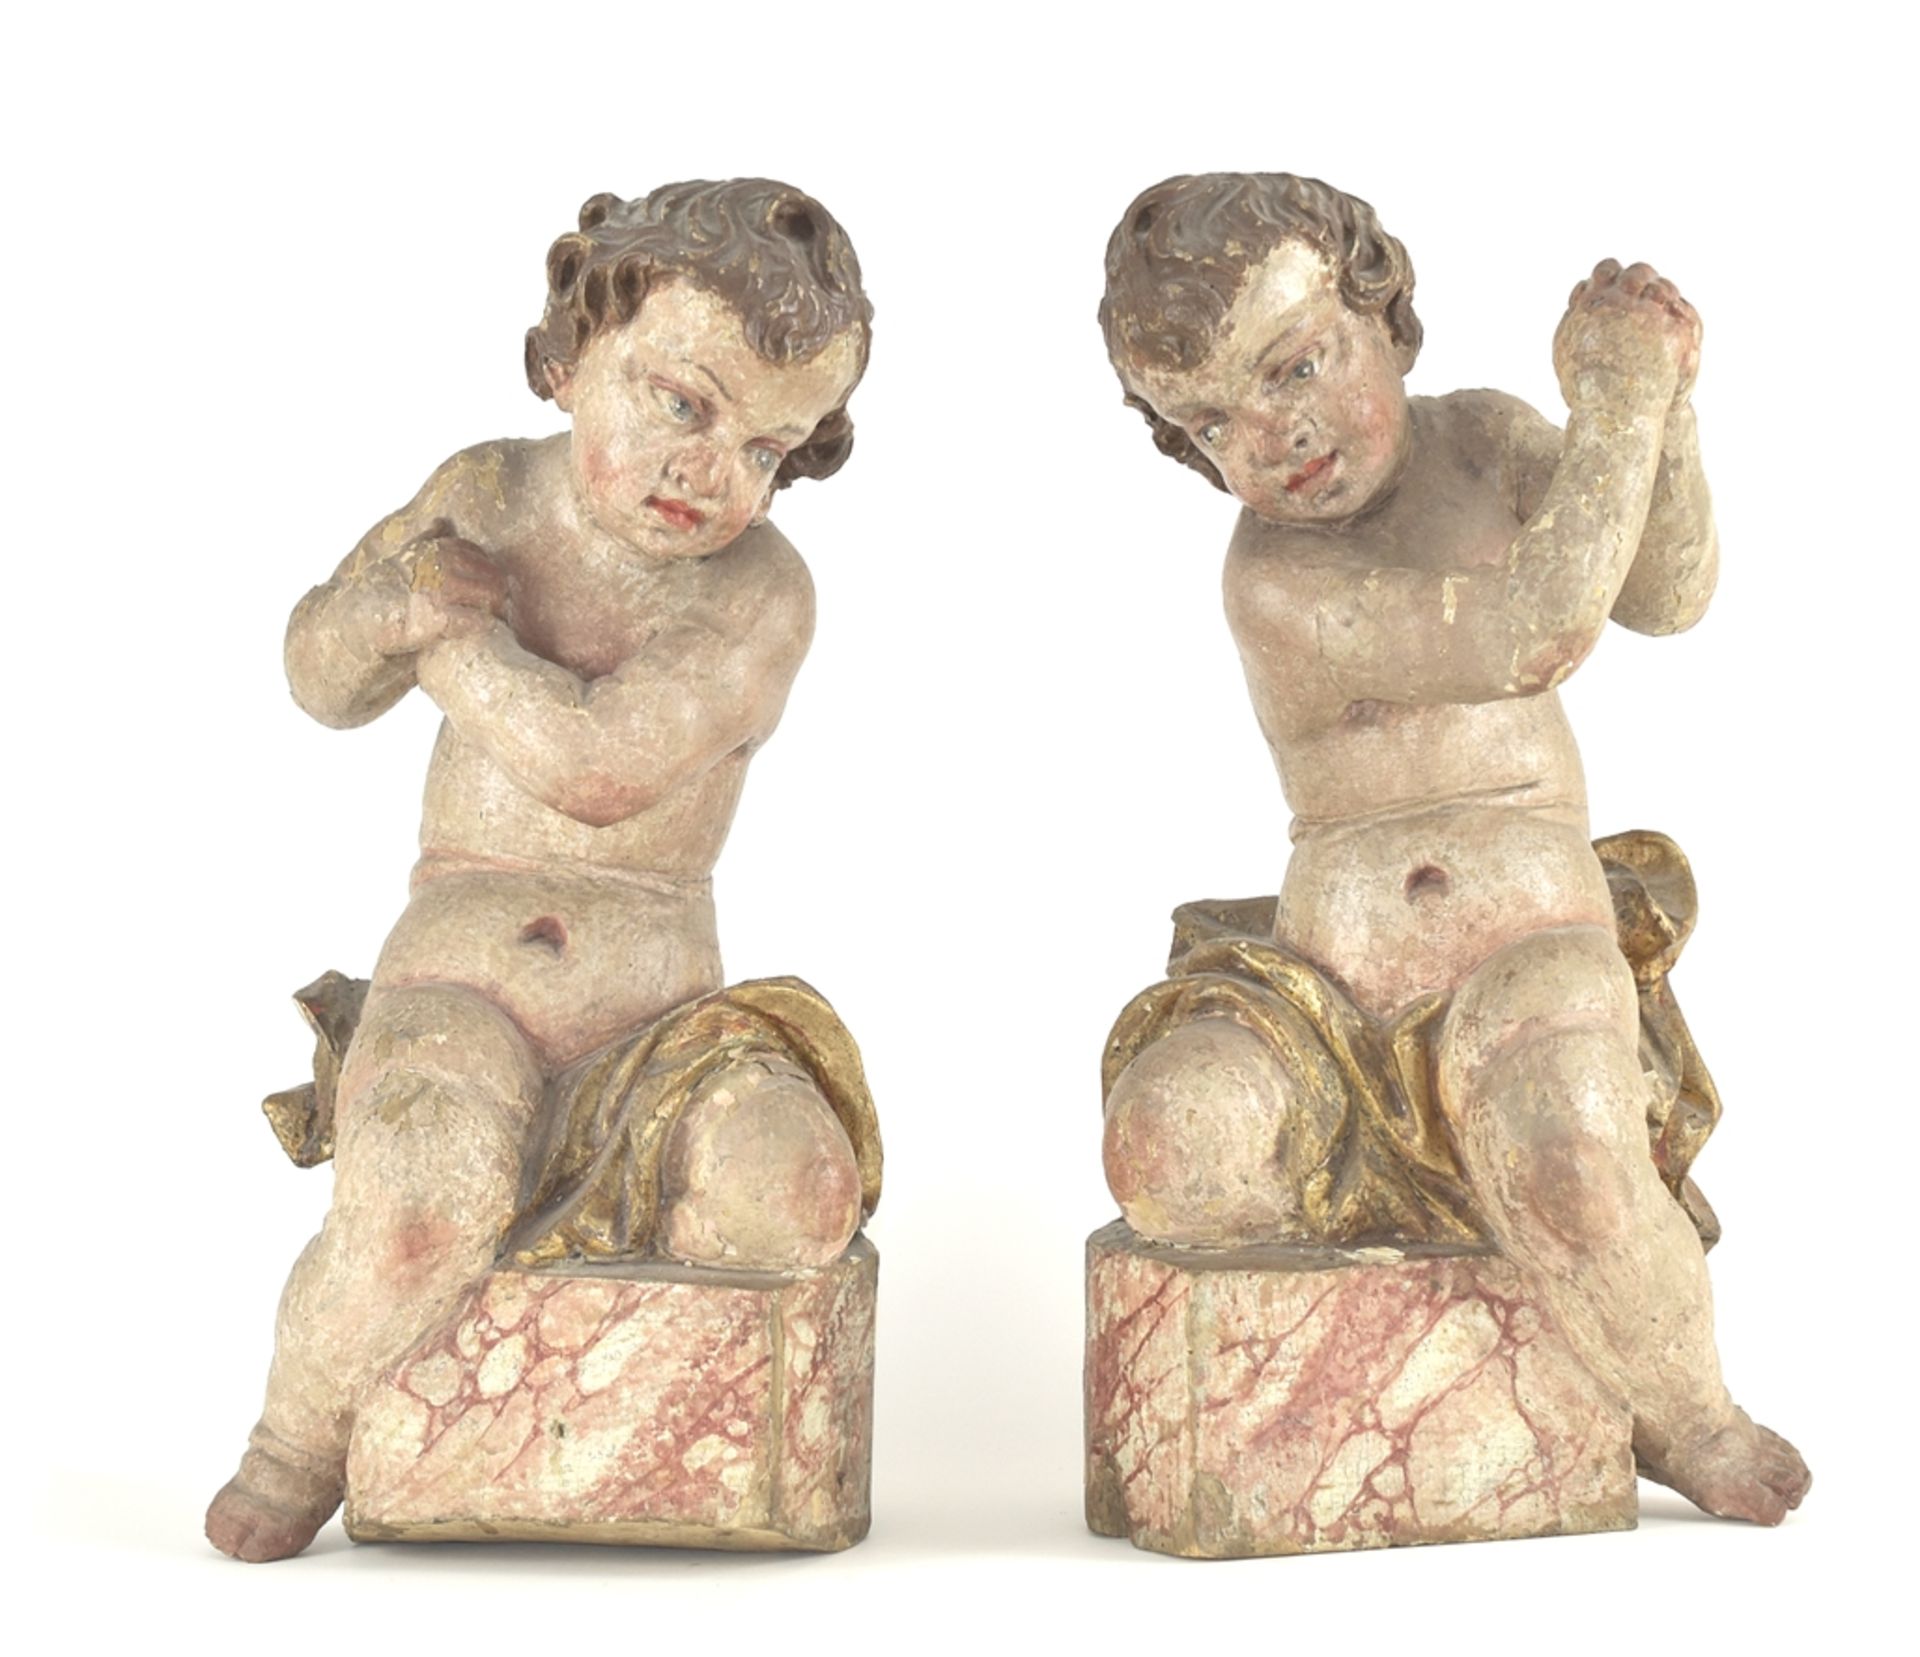 Paar Putti als Altarfiguren. Auf marmorierten Sockeln kniend. Holz. Süddeutsch, 18. Jh. H 46 cm. Sa